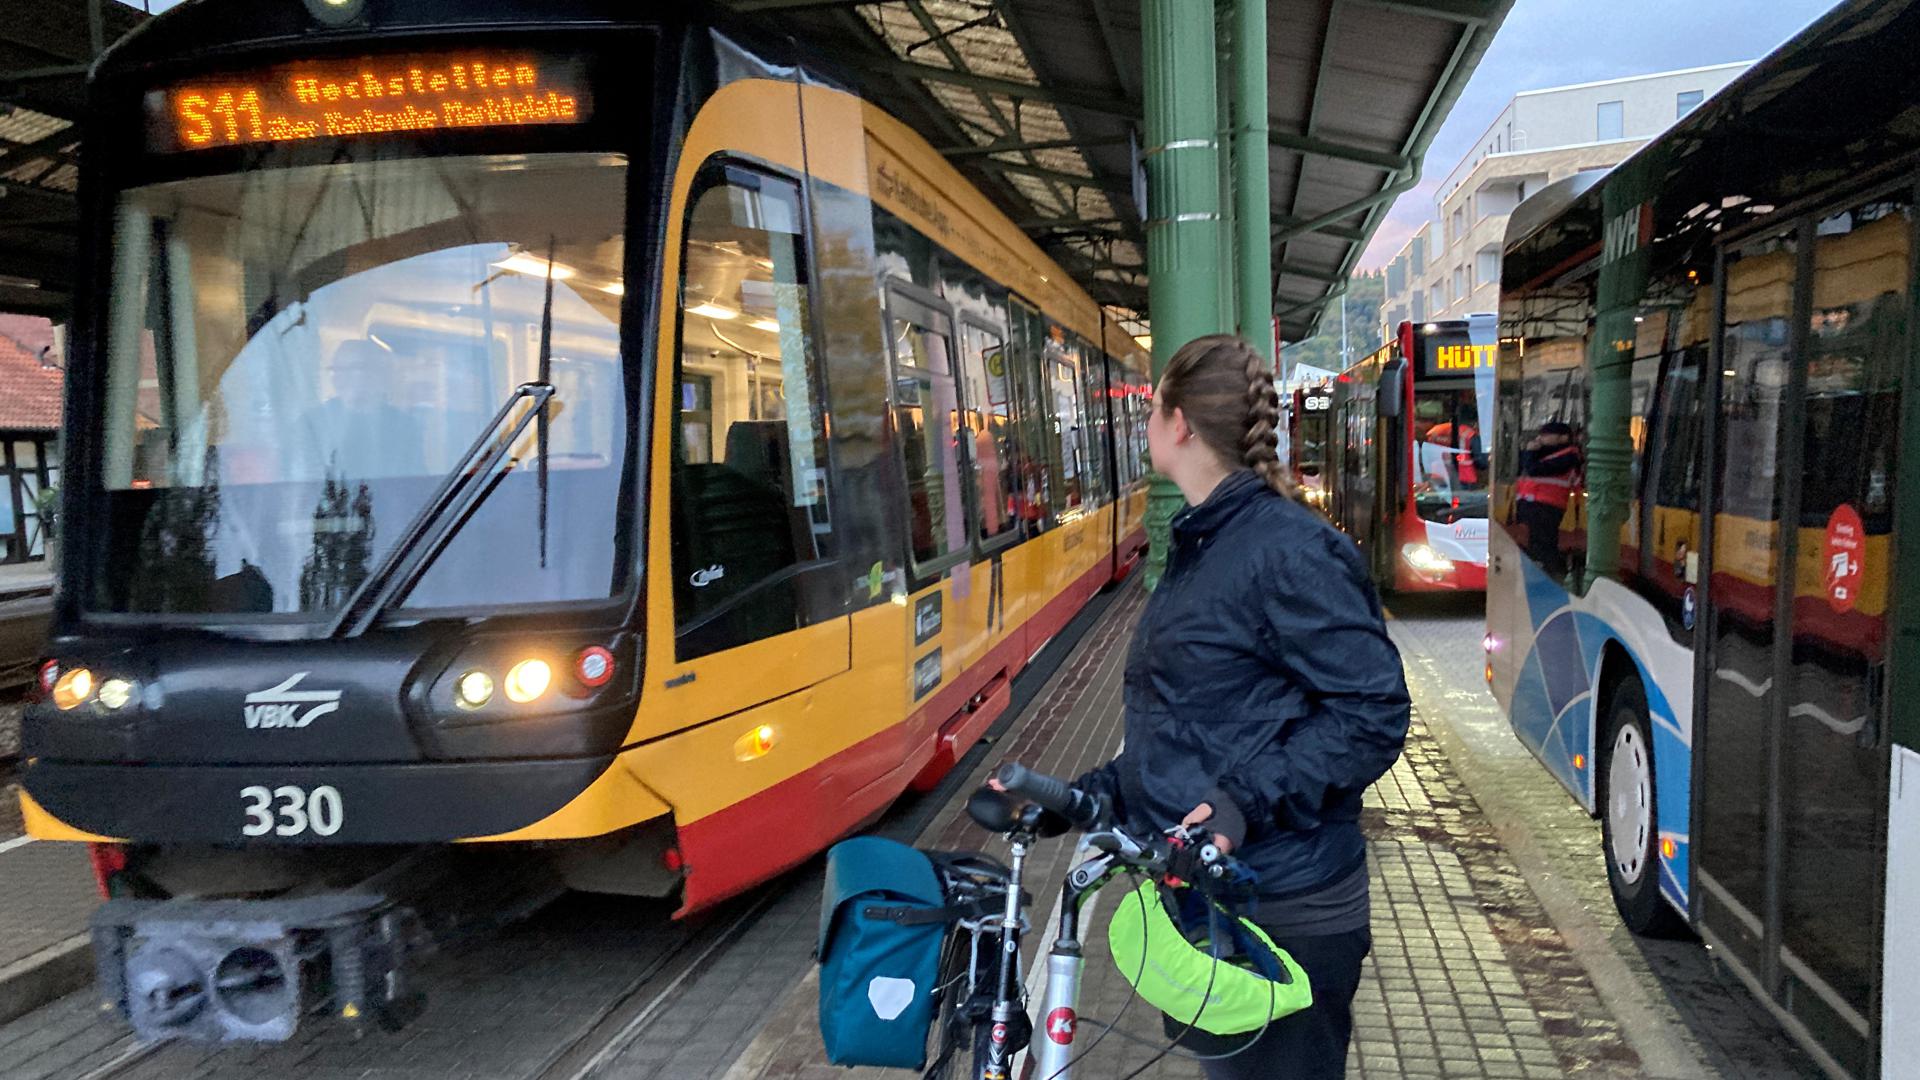 Eine Frau steht mit ihrem Fahrrad zwischen einer Stadtbahn und wartenden Bussen auf dem Bahnsteig.